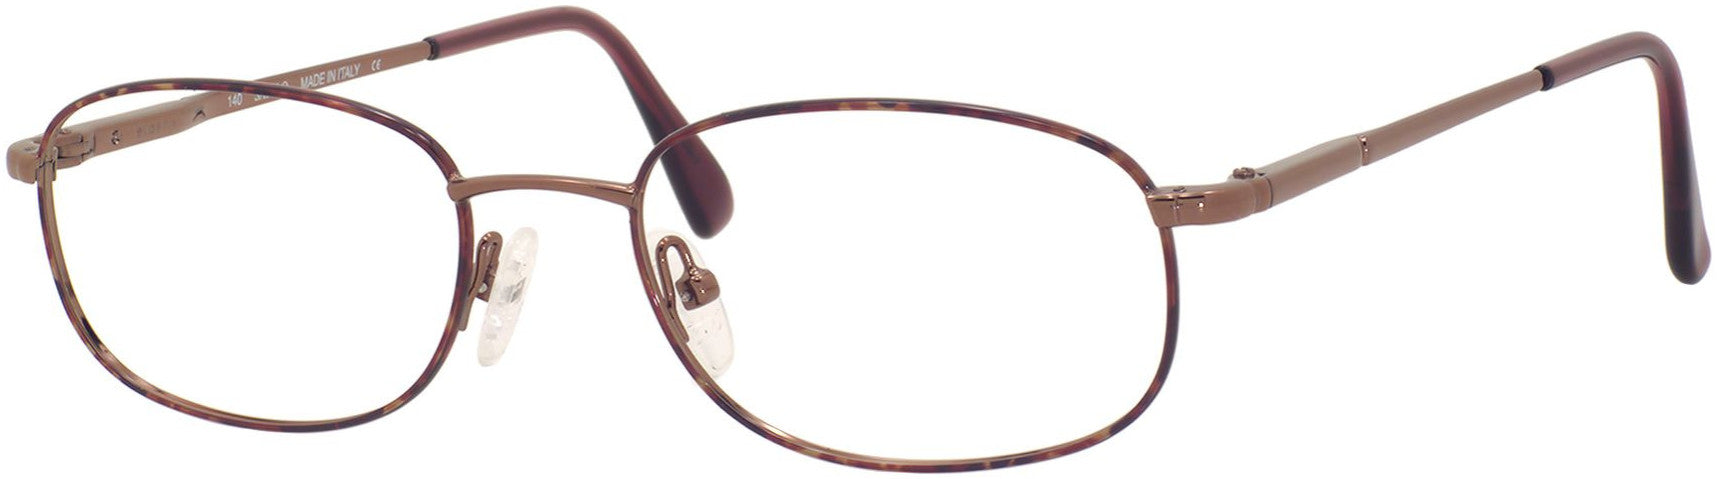  Elasta 7058 Rectangular Eyeglasses 0R69-0R69  Havana Copper (00 Demo Lens)